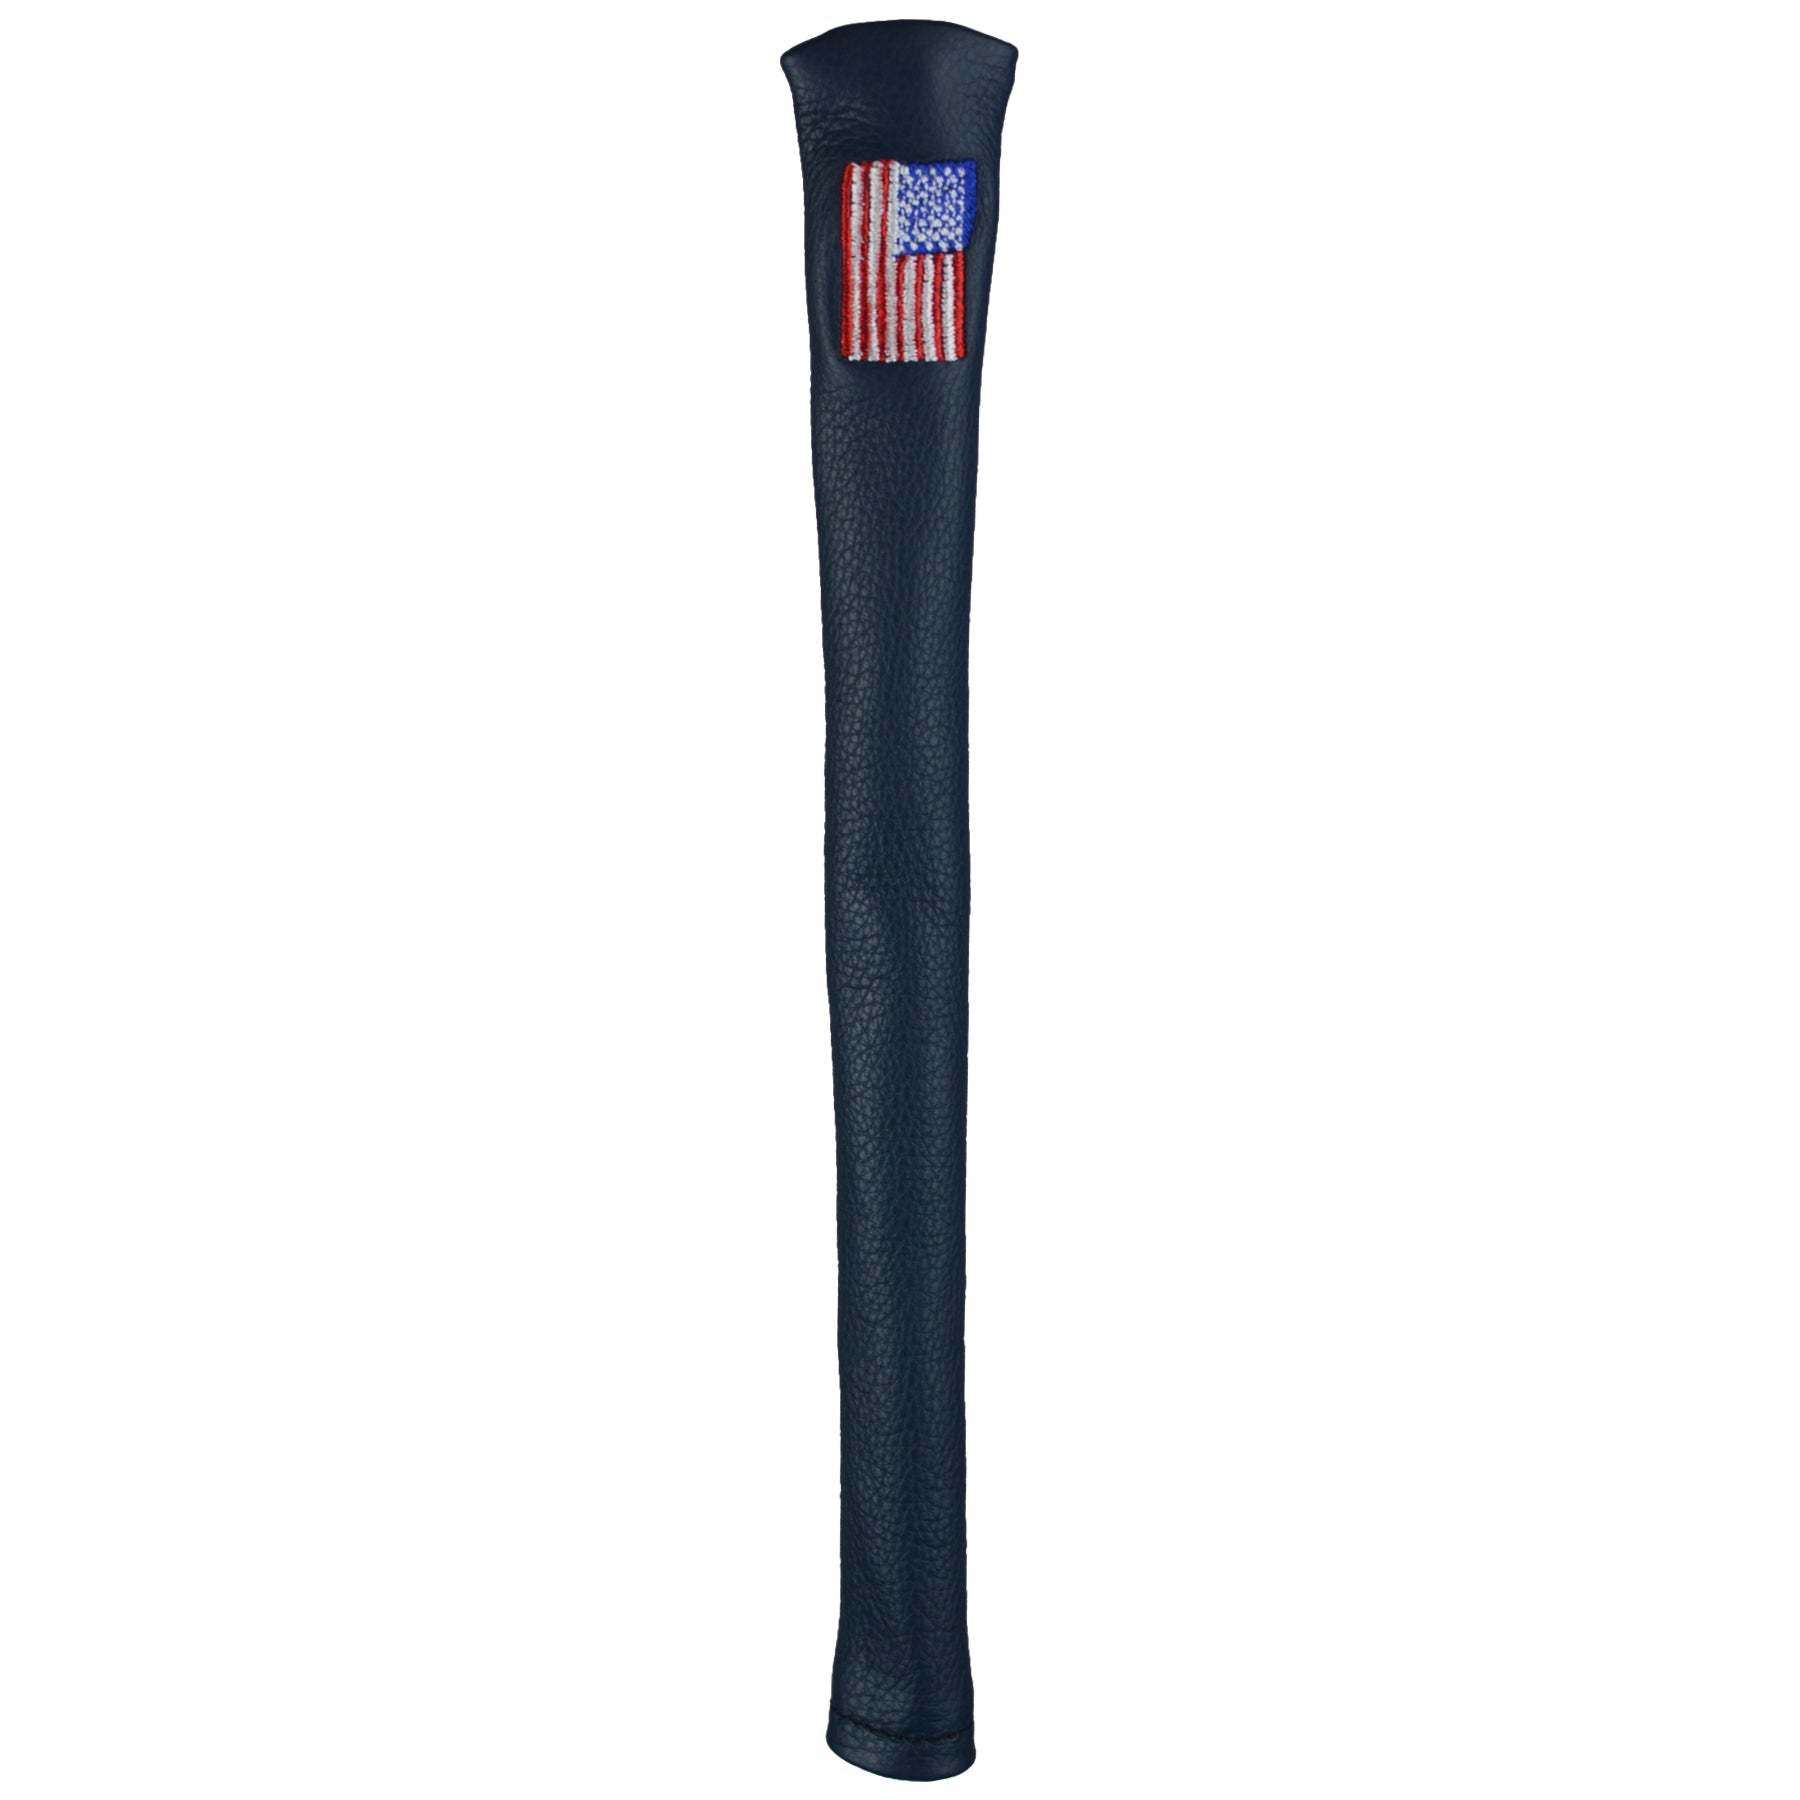 Team USA Alignment Stick Cover - Royal Blue - -